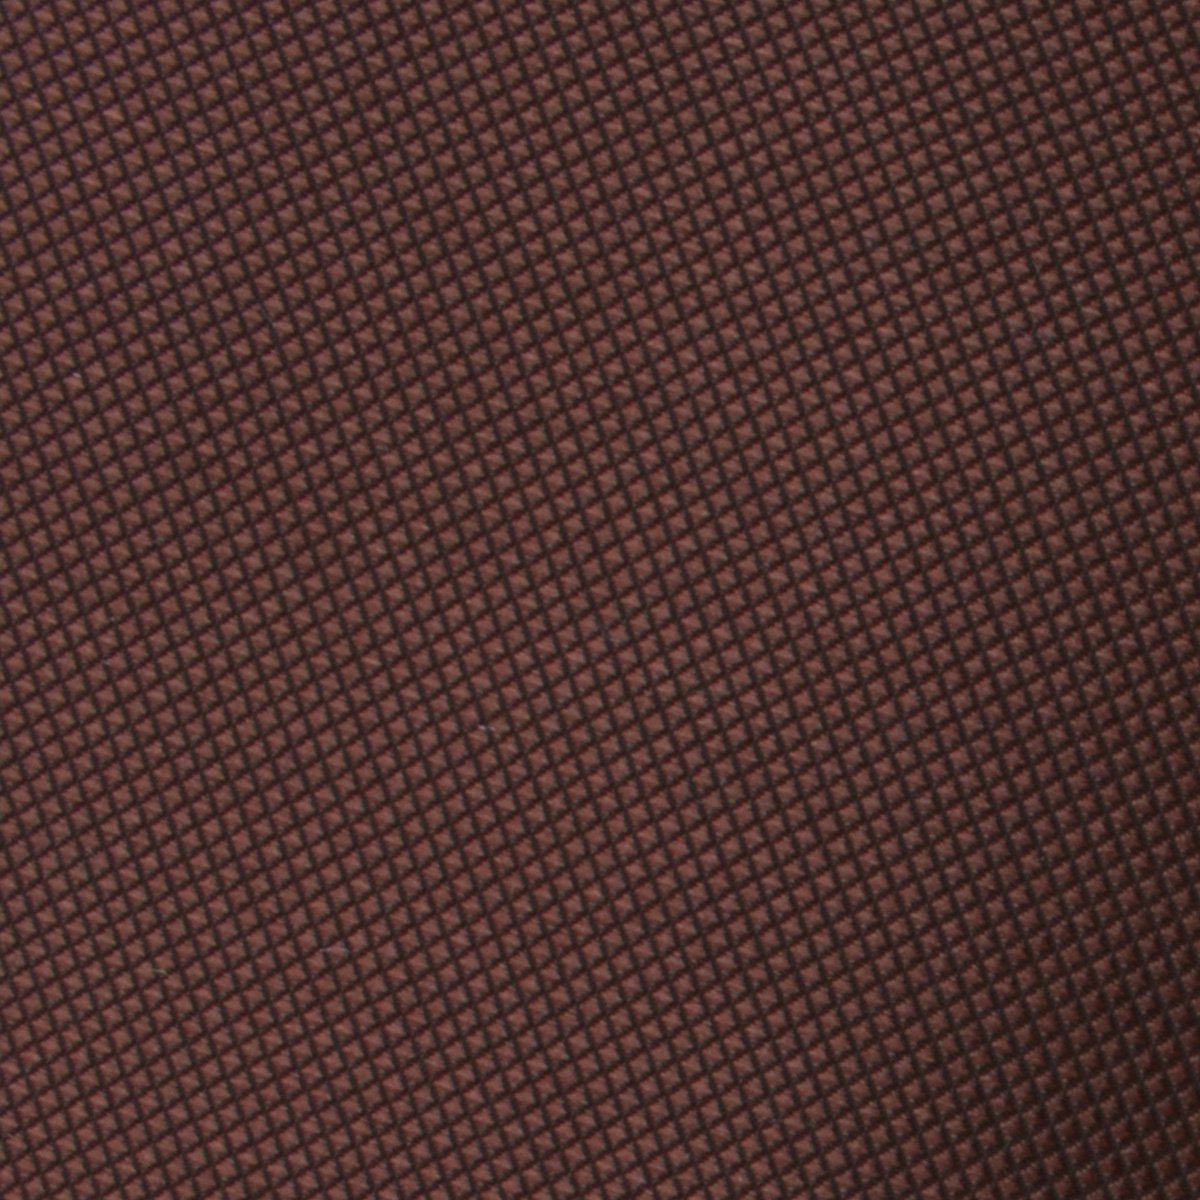 Vernazza Dark Brown Diamond Skinny Tie Fabric